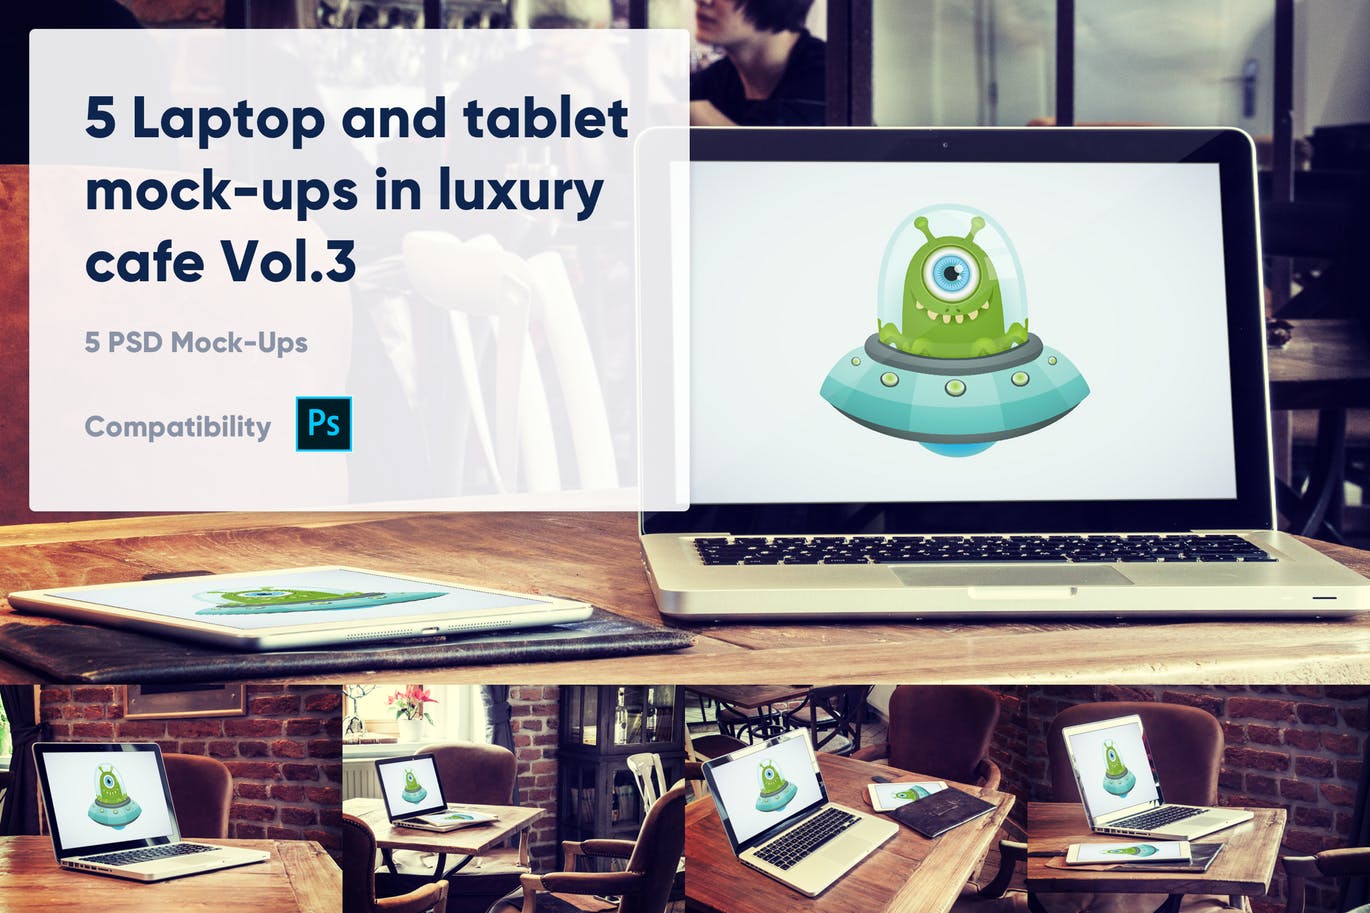 咖啡厅场景笔记本电脑&平板电脑屏幕预览第一素材精选样机v3 5 Laptop and tablet mock-ups in cafe Vol. 3插图